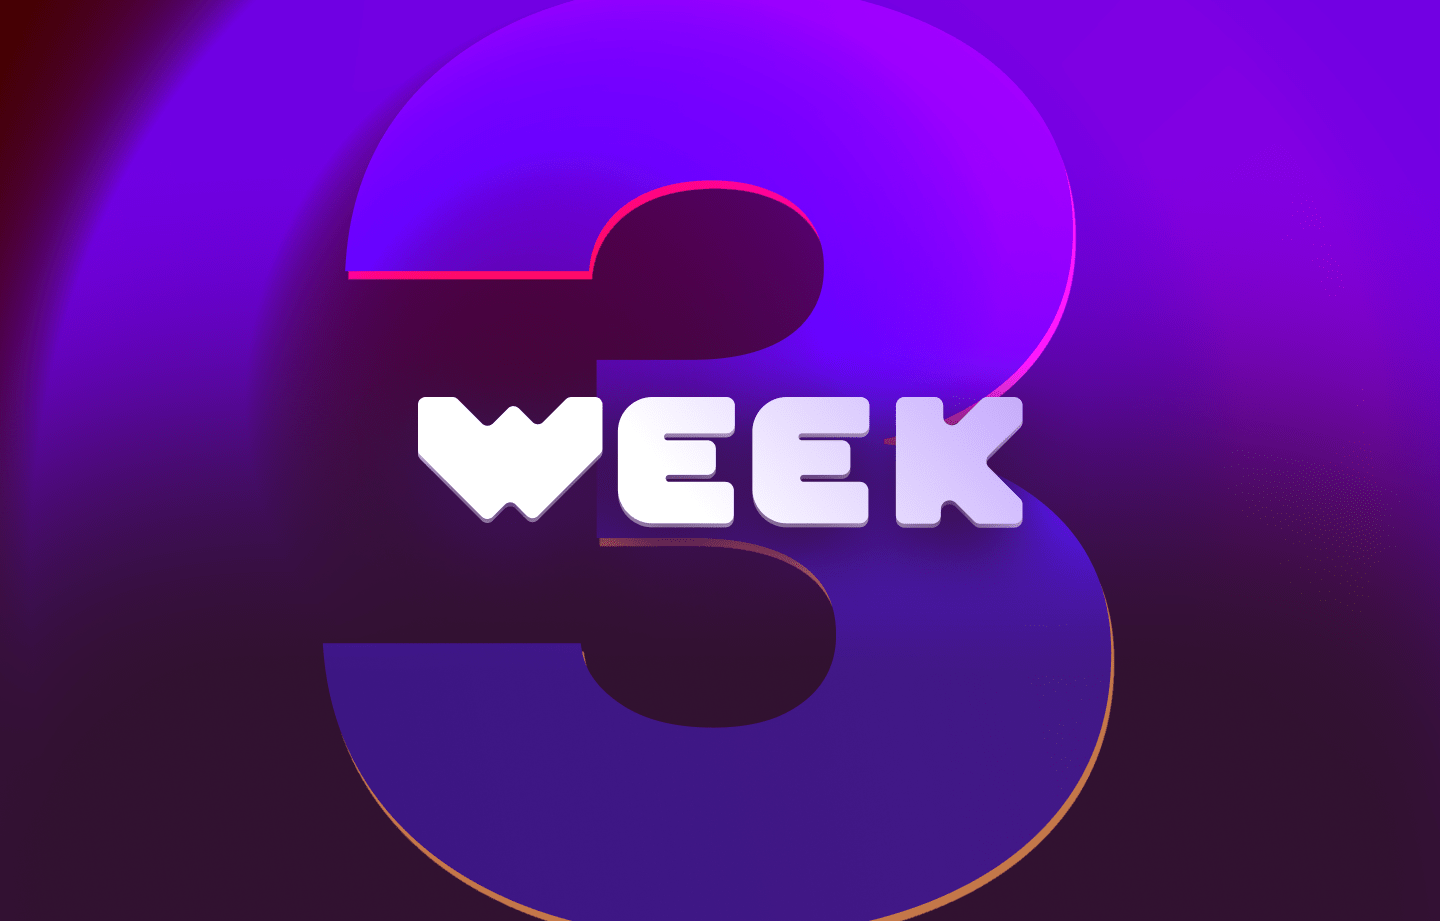 This week in web3 #3